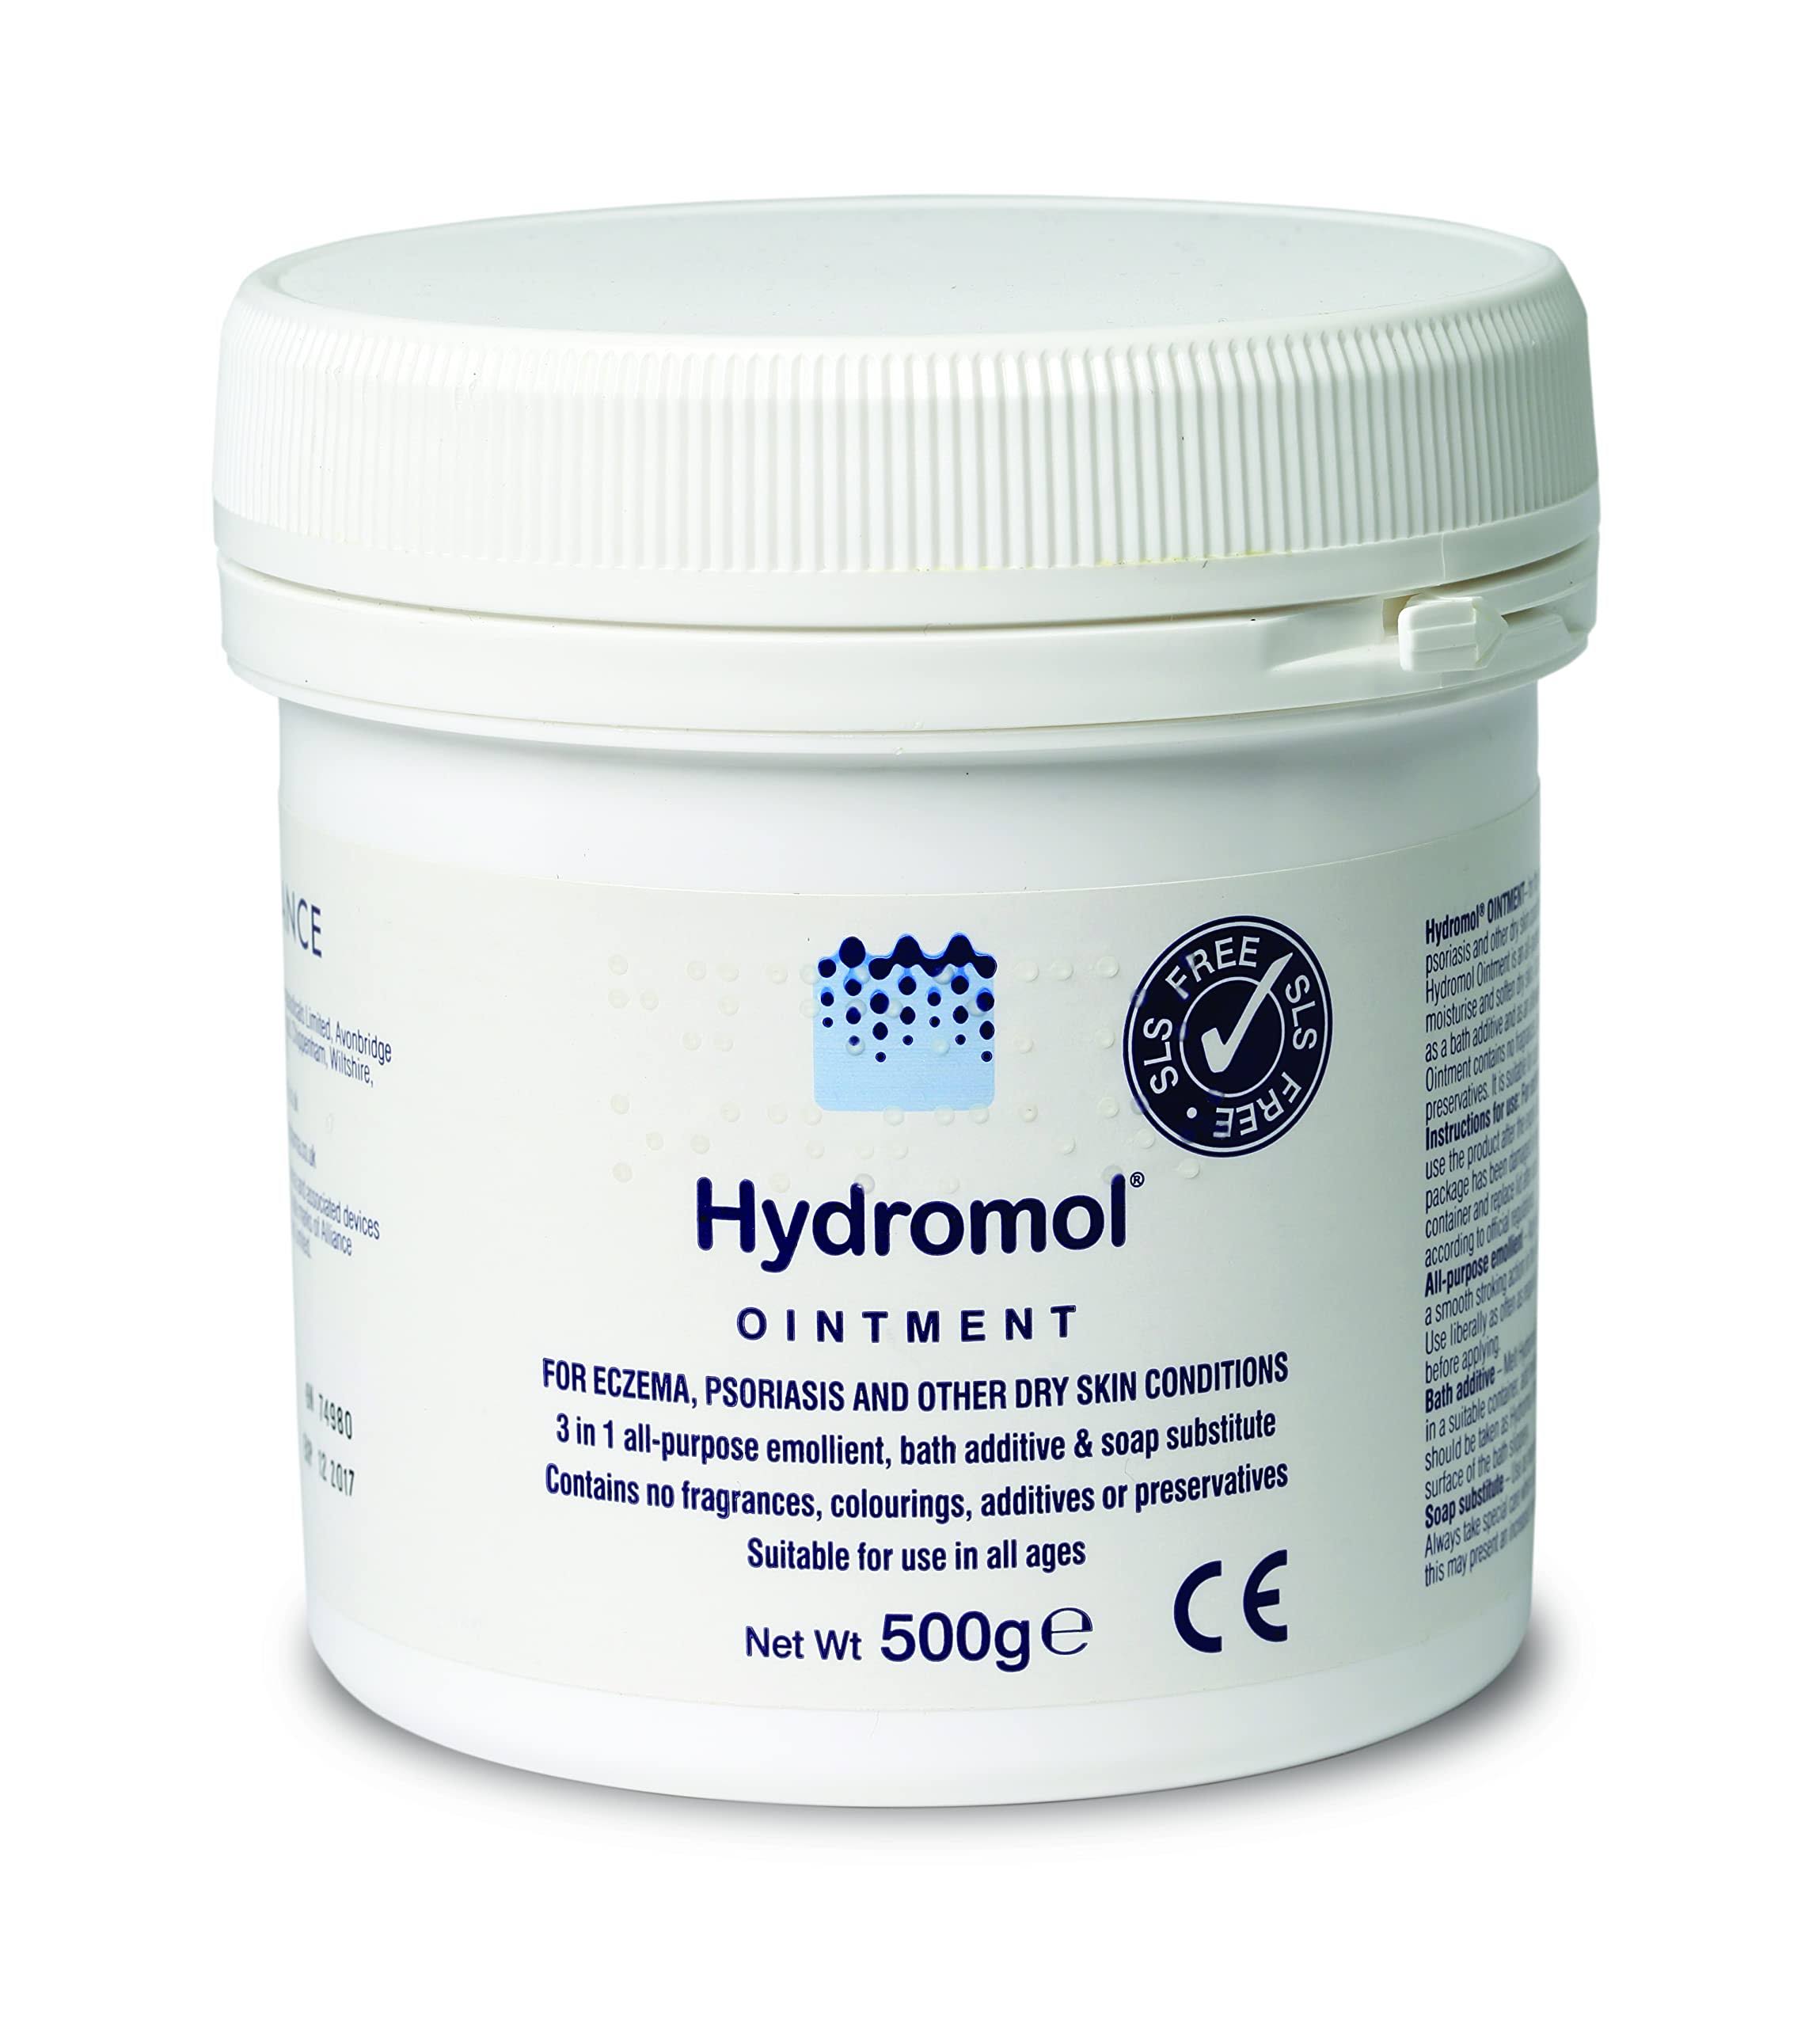 Hydromol Ointment - 500g